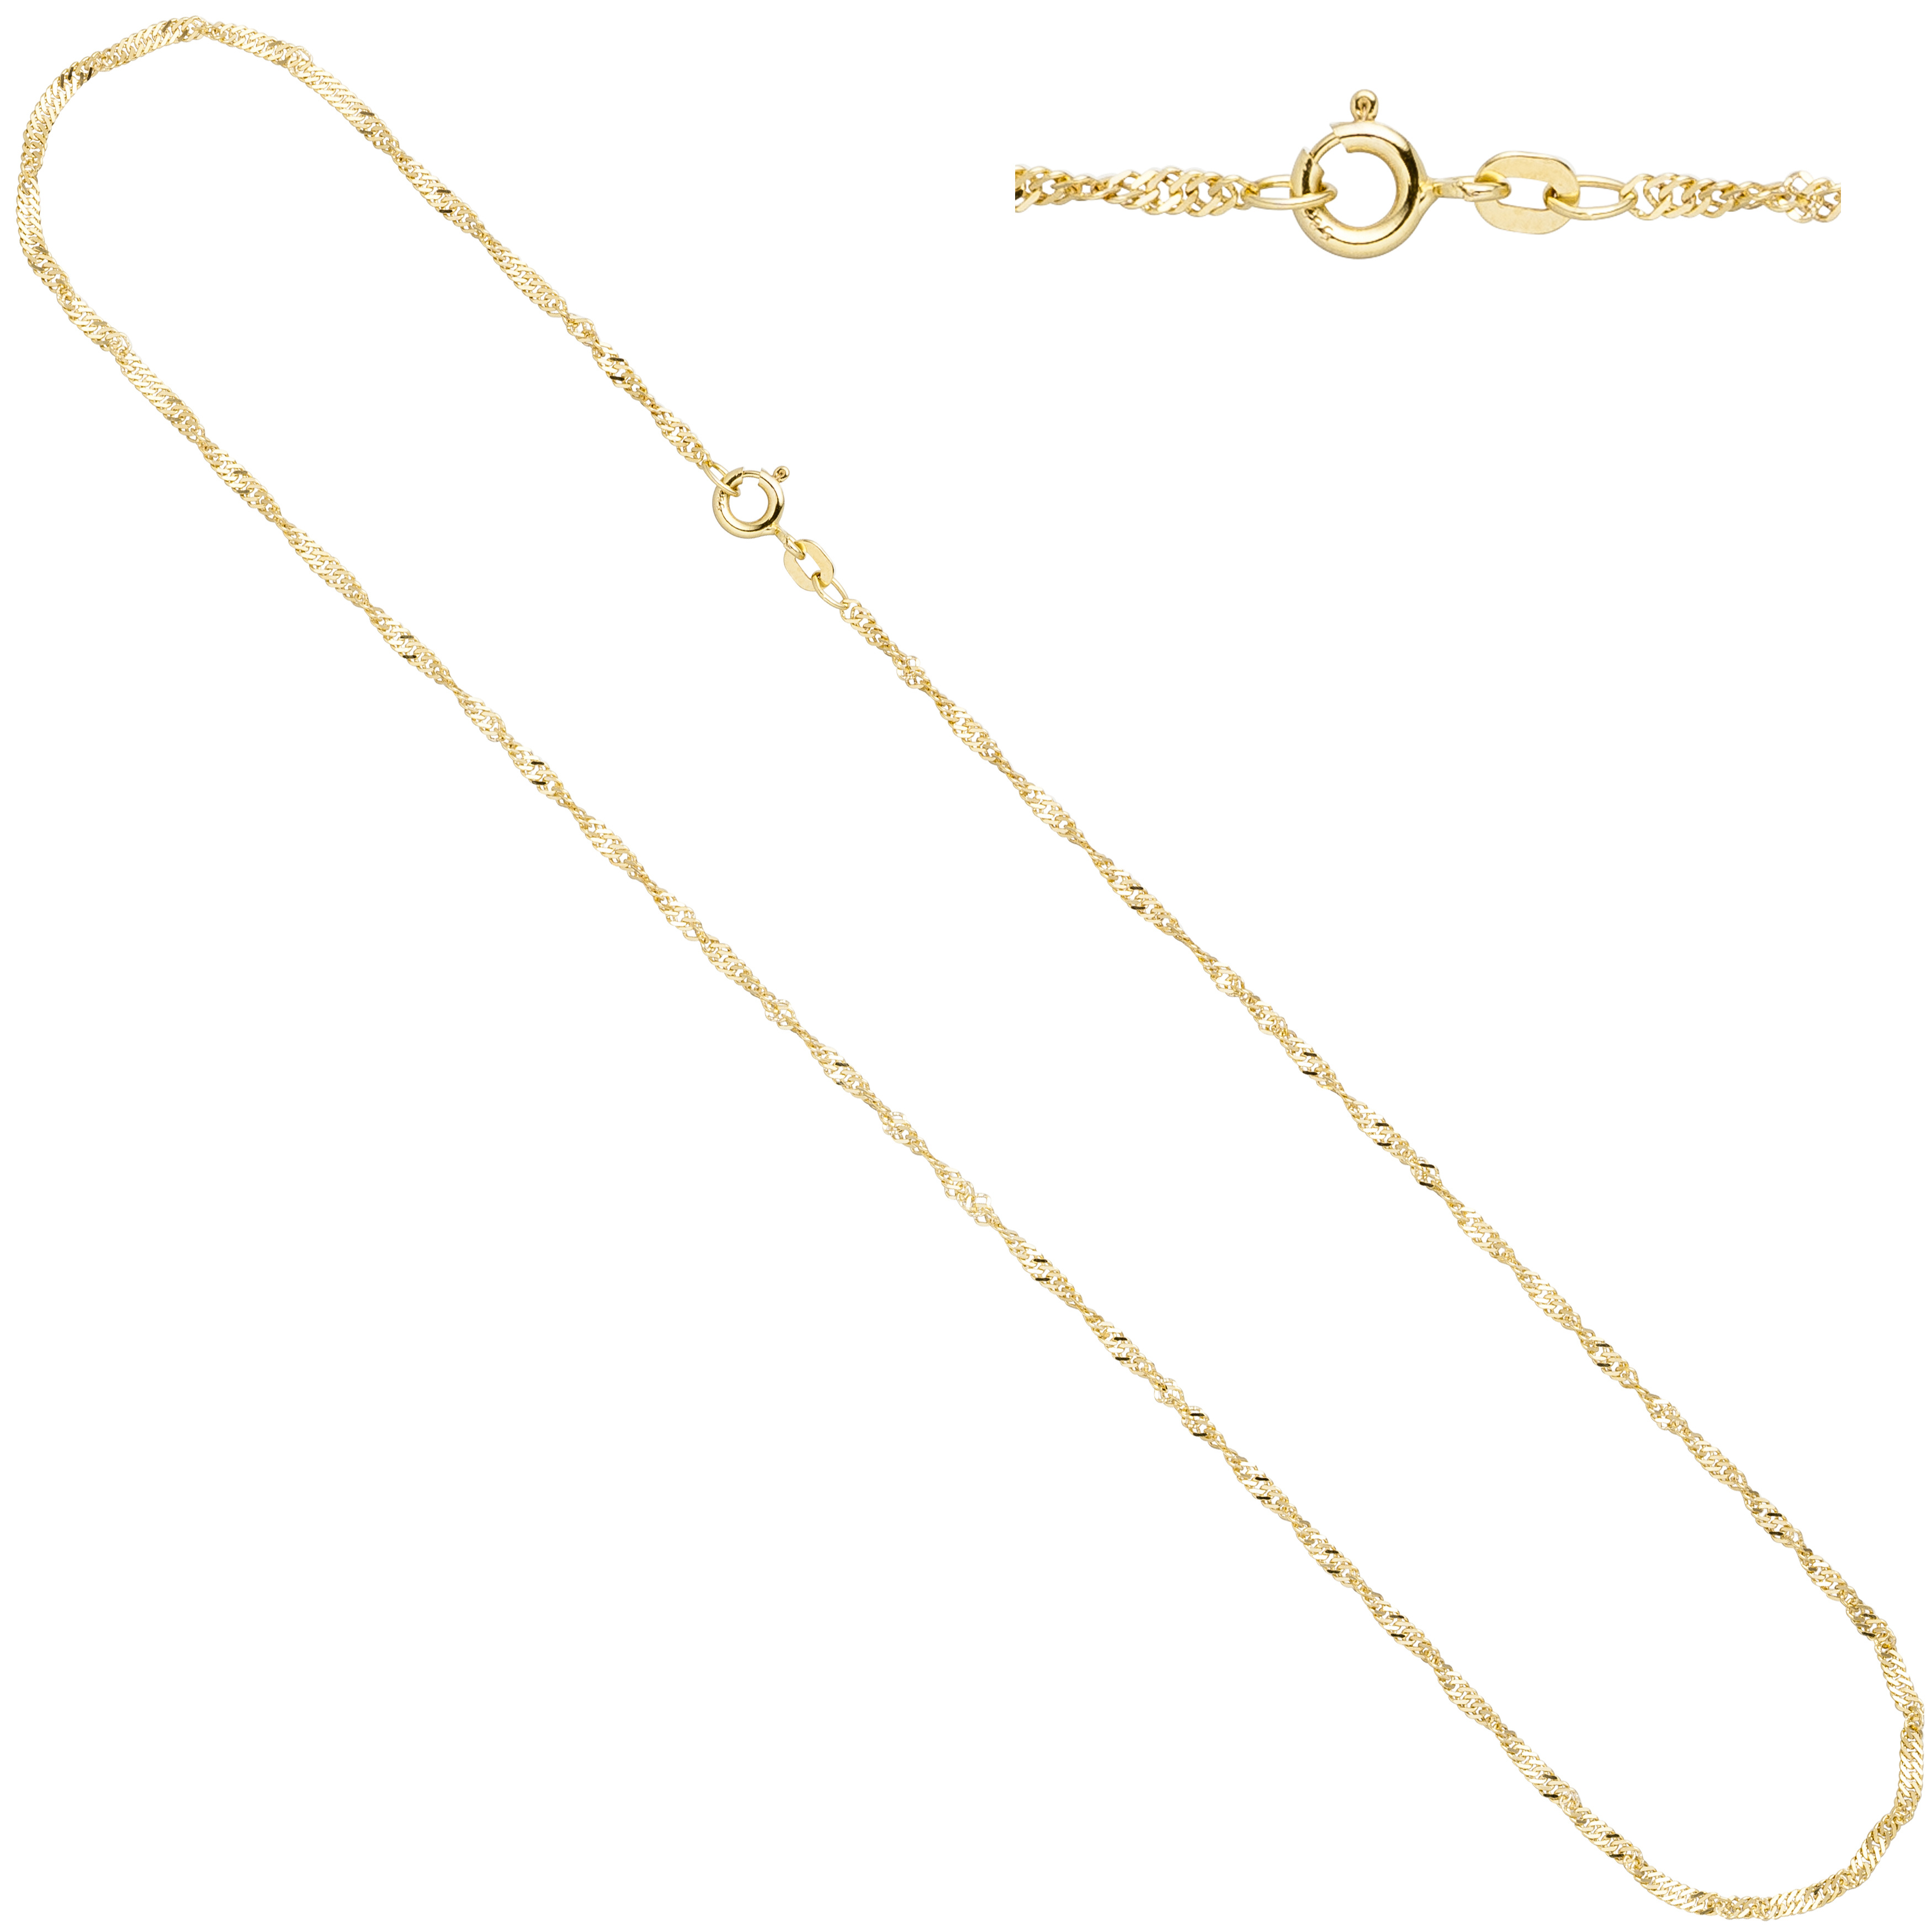 Singapurkette 333 Gelbgold 1,8 mm 50 cm Gold Kette Halskette Federring